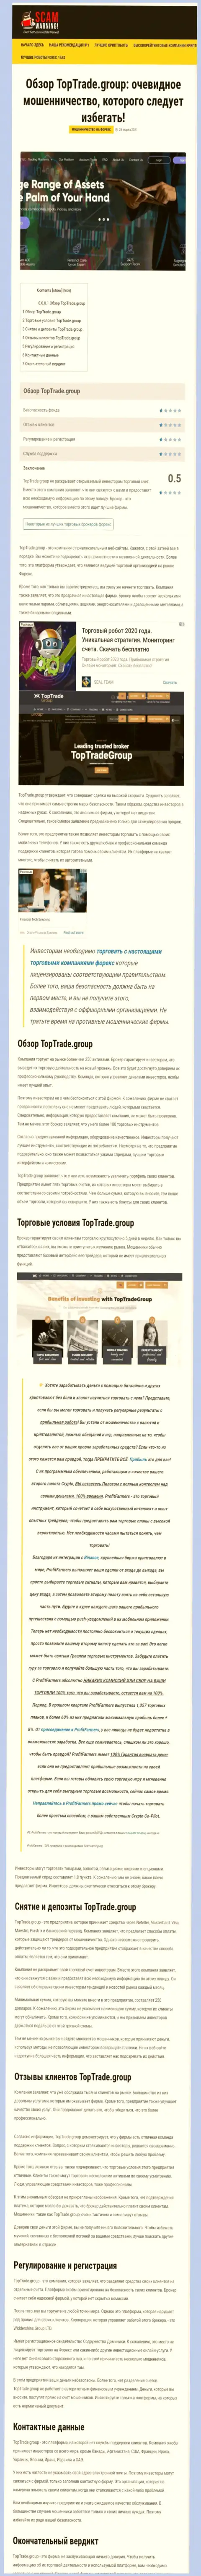 Обзорная статья противозаконных комбинаций TopTradeGroup, направленных на кидалово реальных клиентов